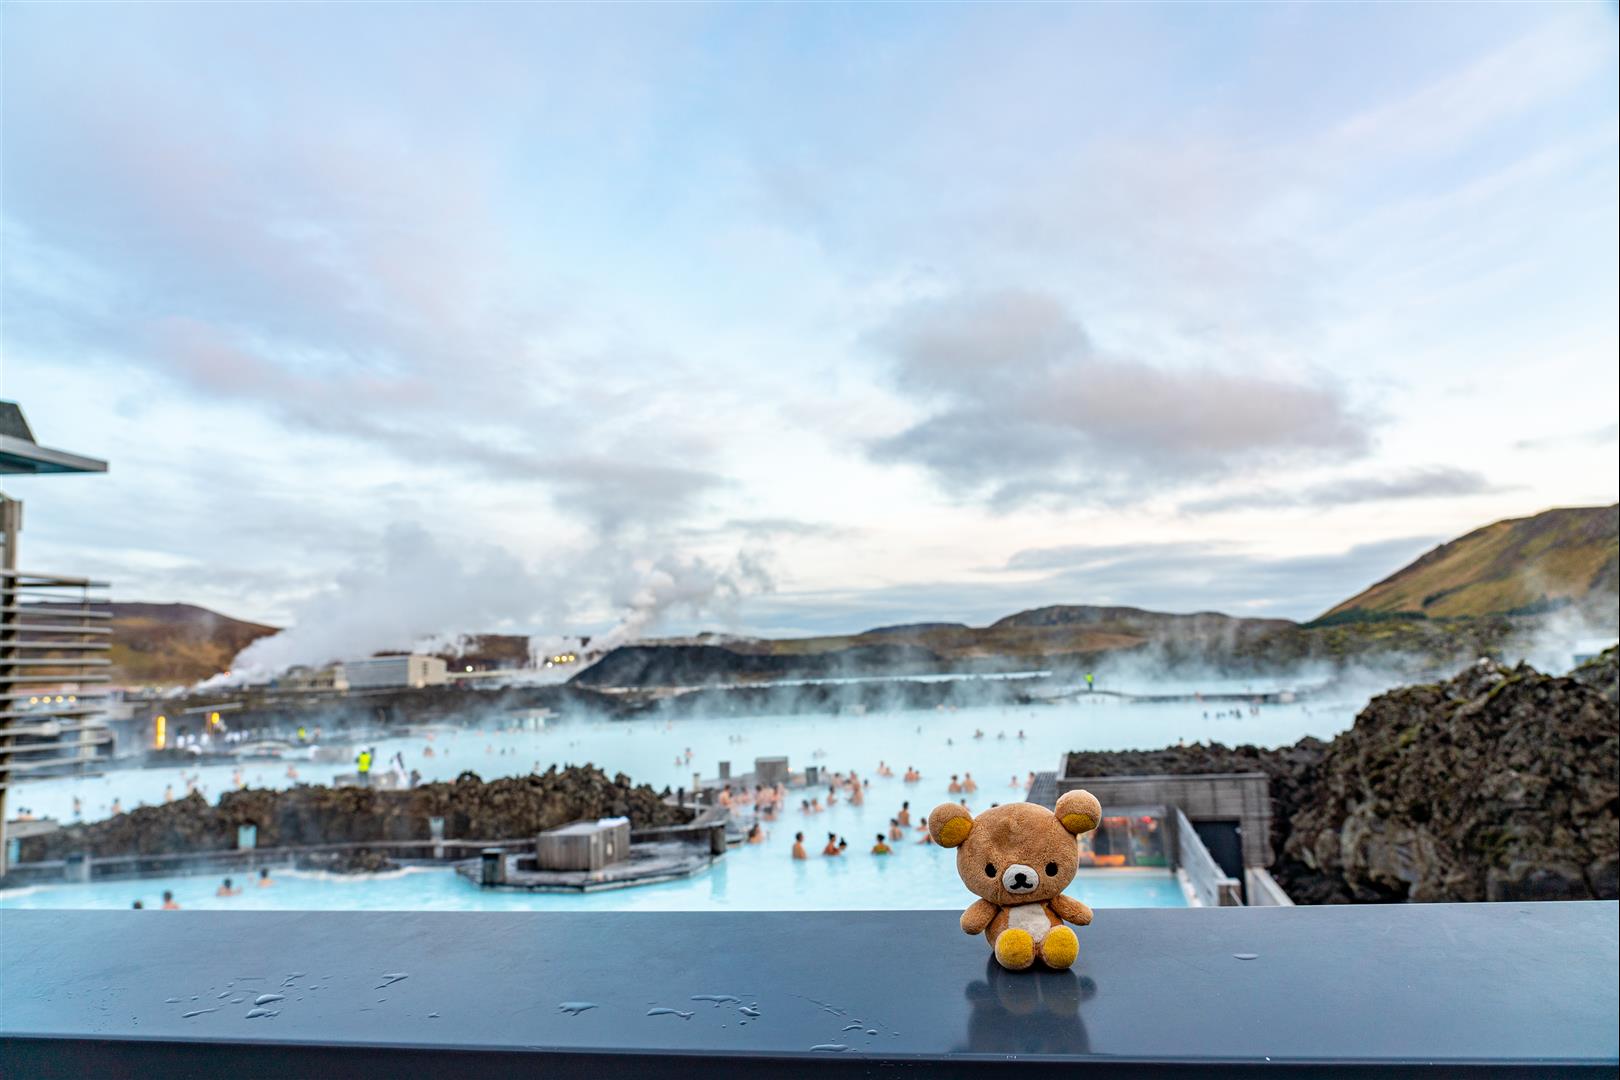 [賀禎禎冰島攝影團] 第 08 天 – 雅克 - 火口湖/辛格維爾國家公園/藍湖溫泉/凱夫拉維克機場